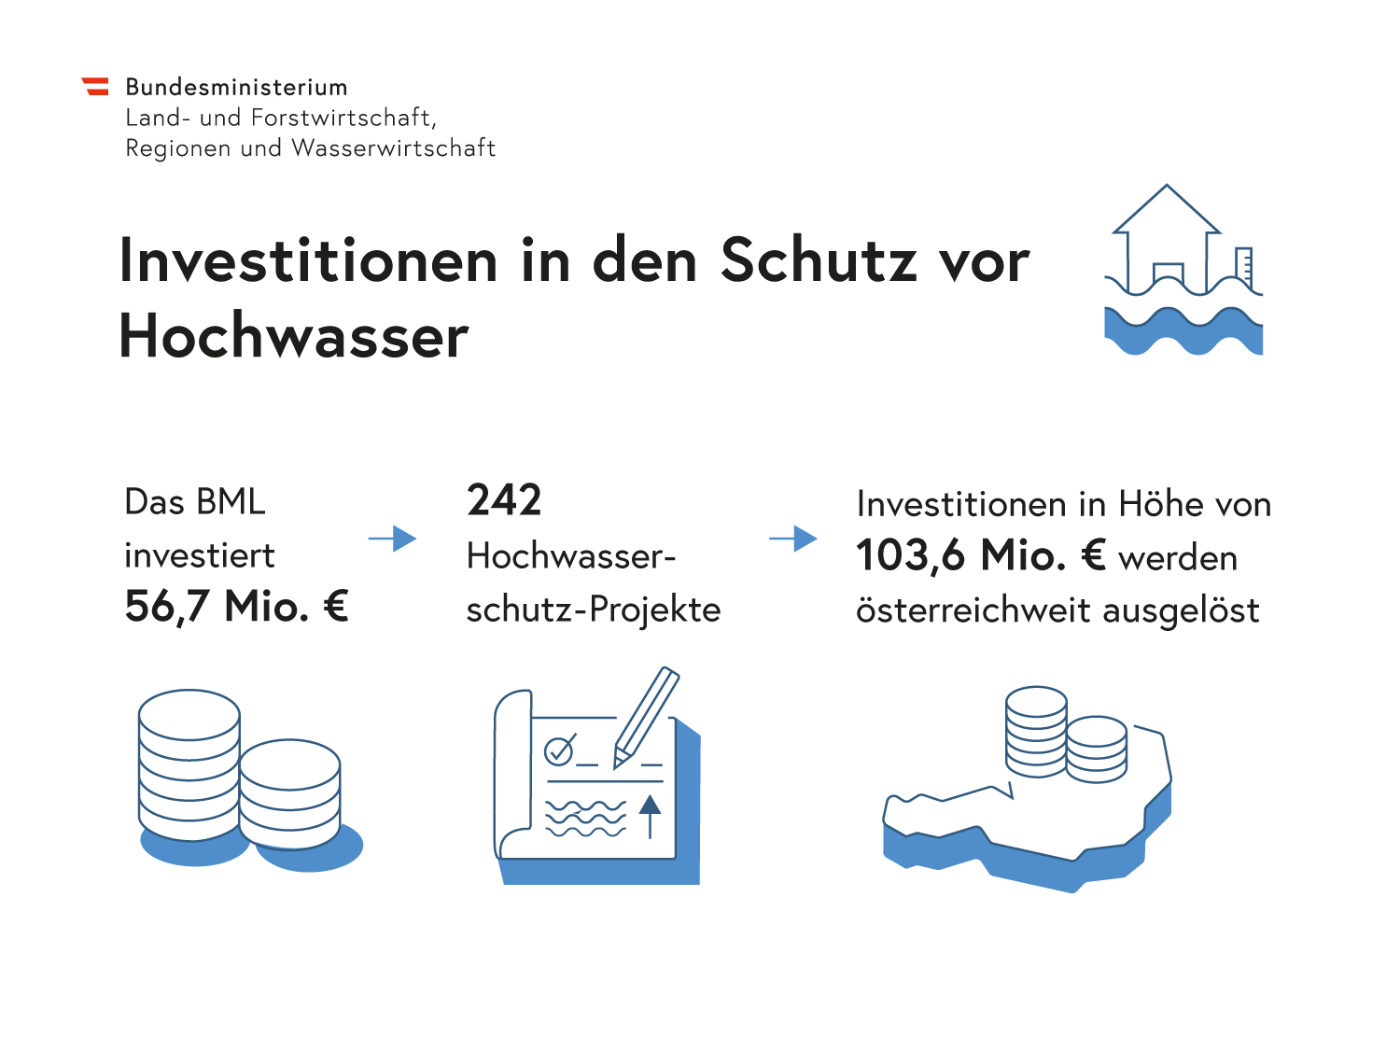 Grafik in Wort, Zahlen und Abbildung der Investitionen in den Schutz vor Hochwasser